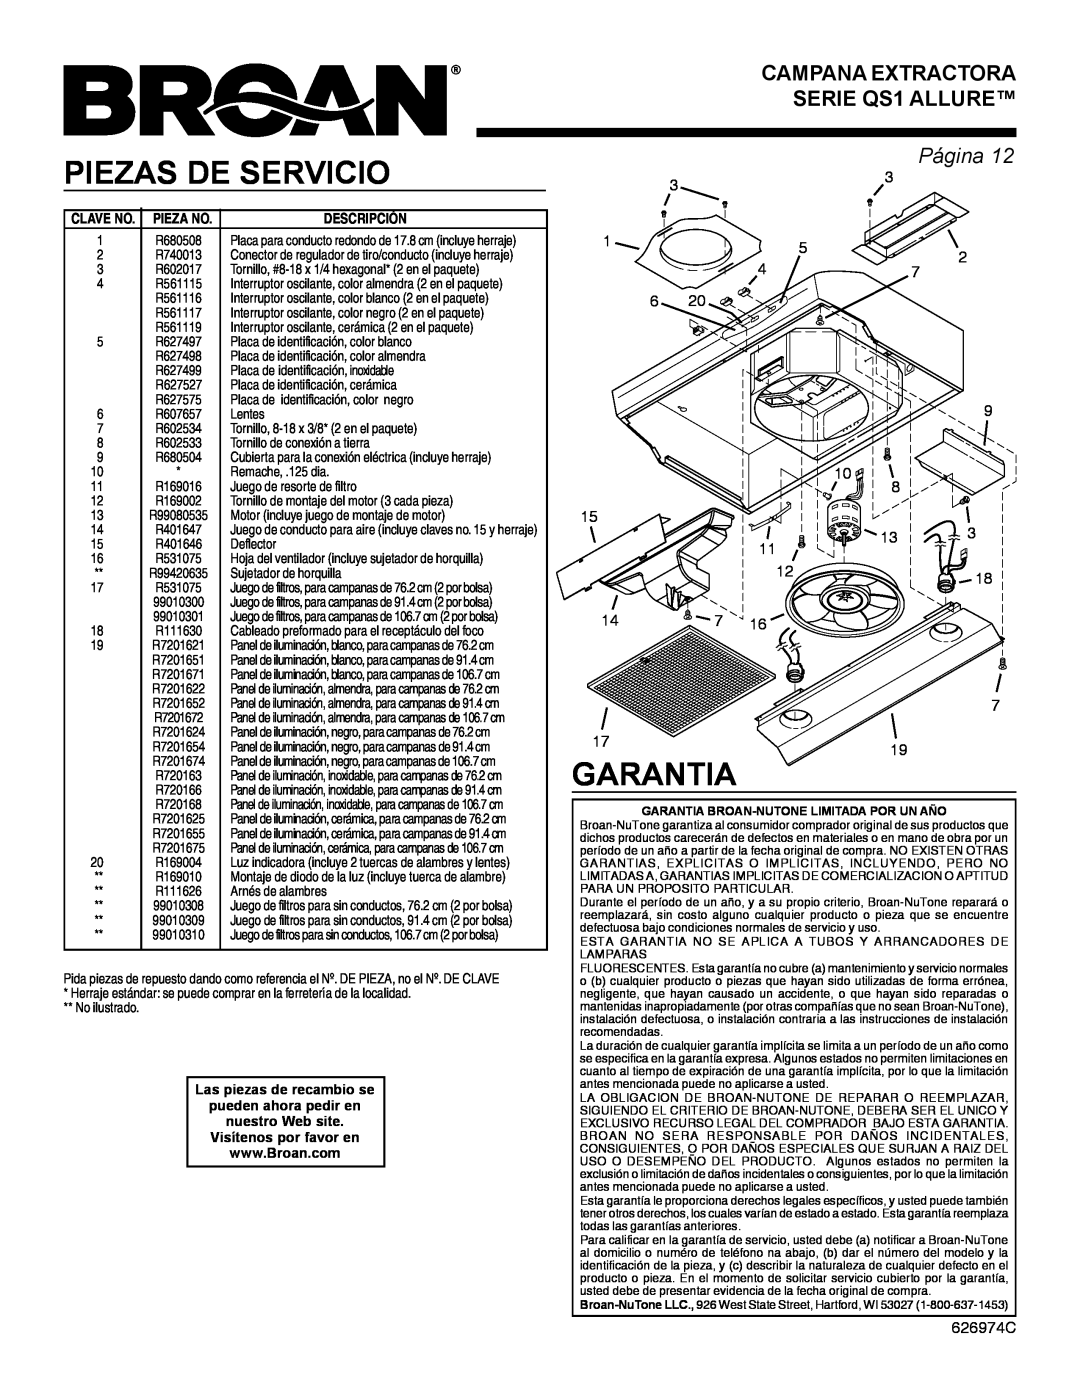 Broan warranty Piezas De Servicio, Garantia, CAMPANA EXTRACTORA SERIE QS1 ALLURE, Página 